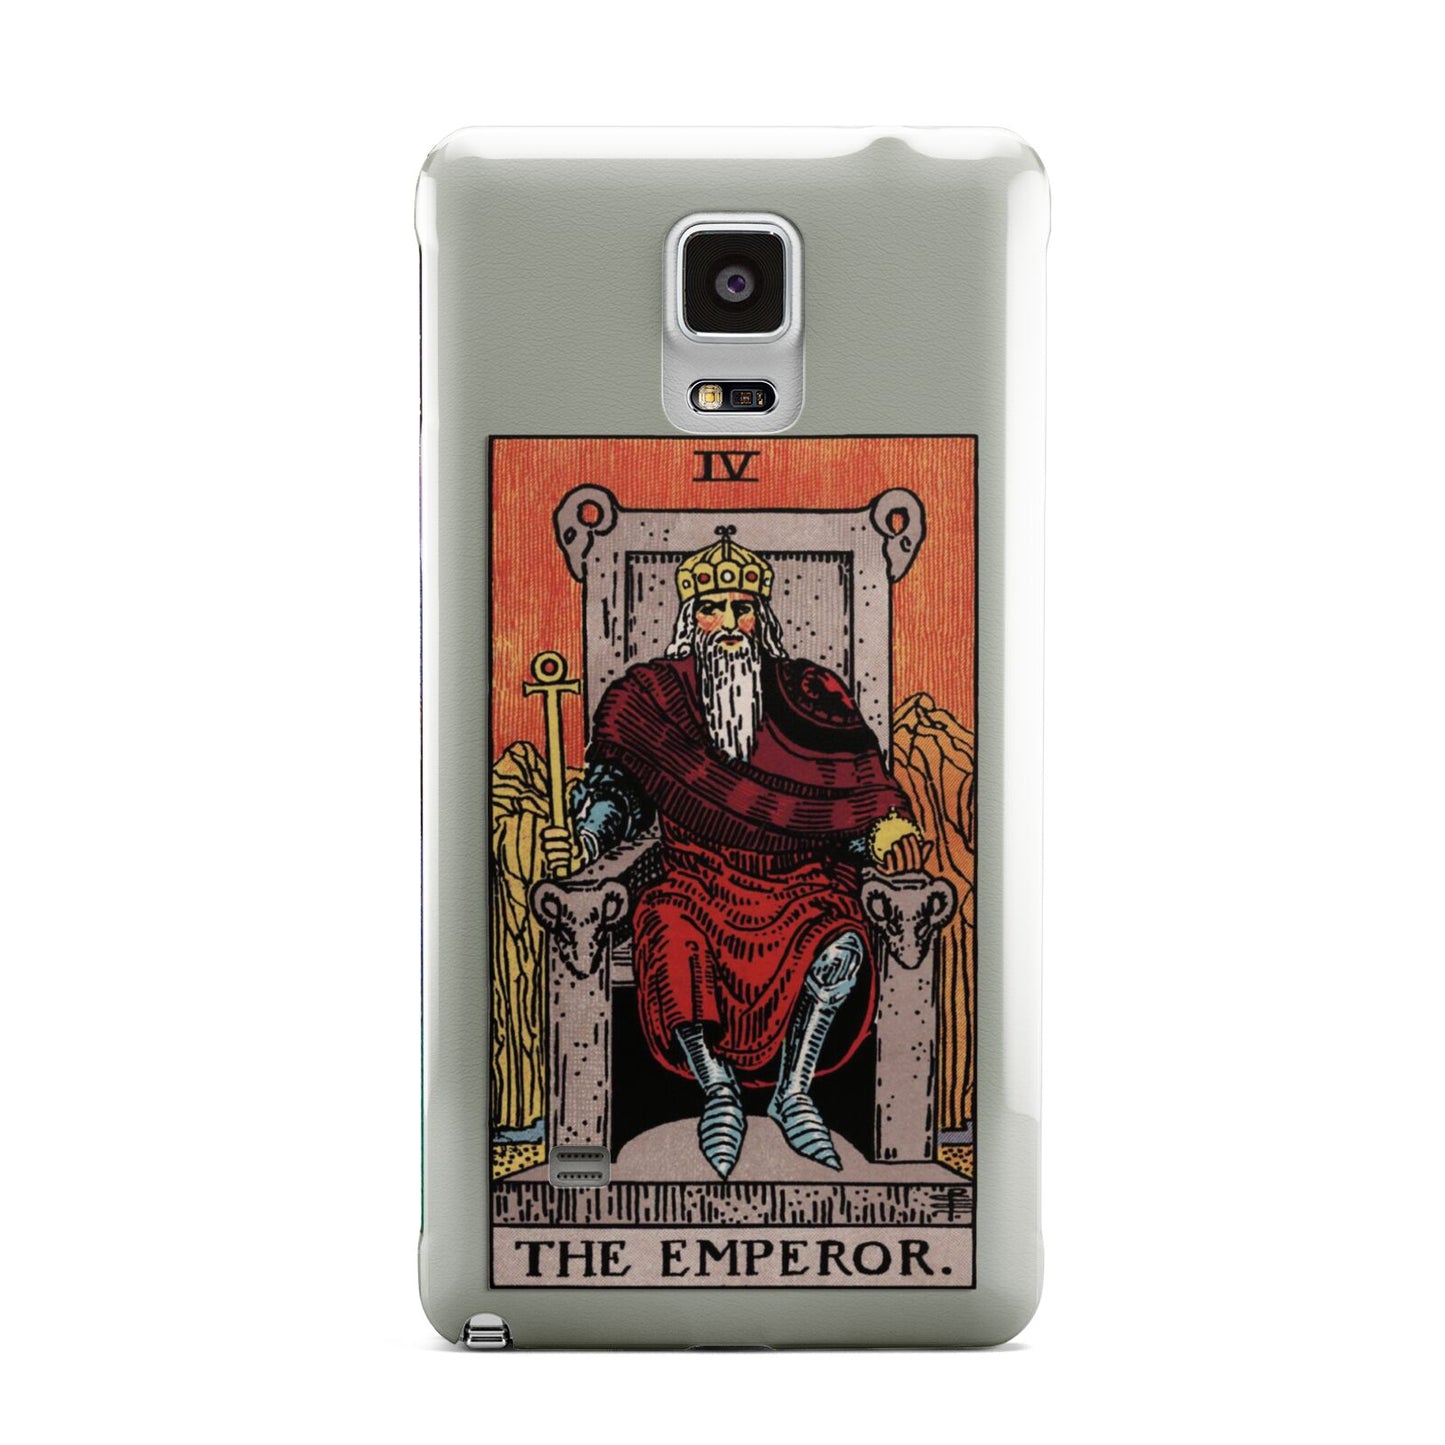 The Emperor Tarot Card Samsung Galaxy Note 4 Case